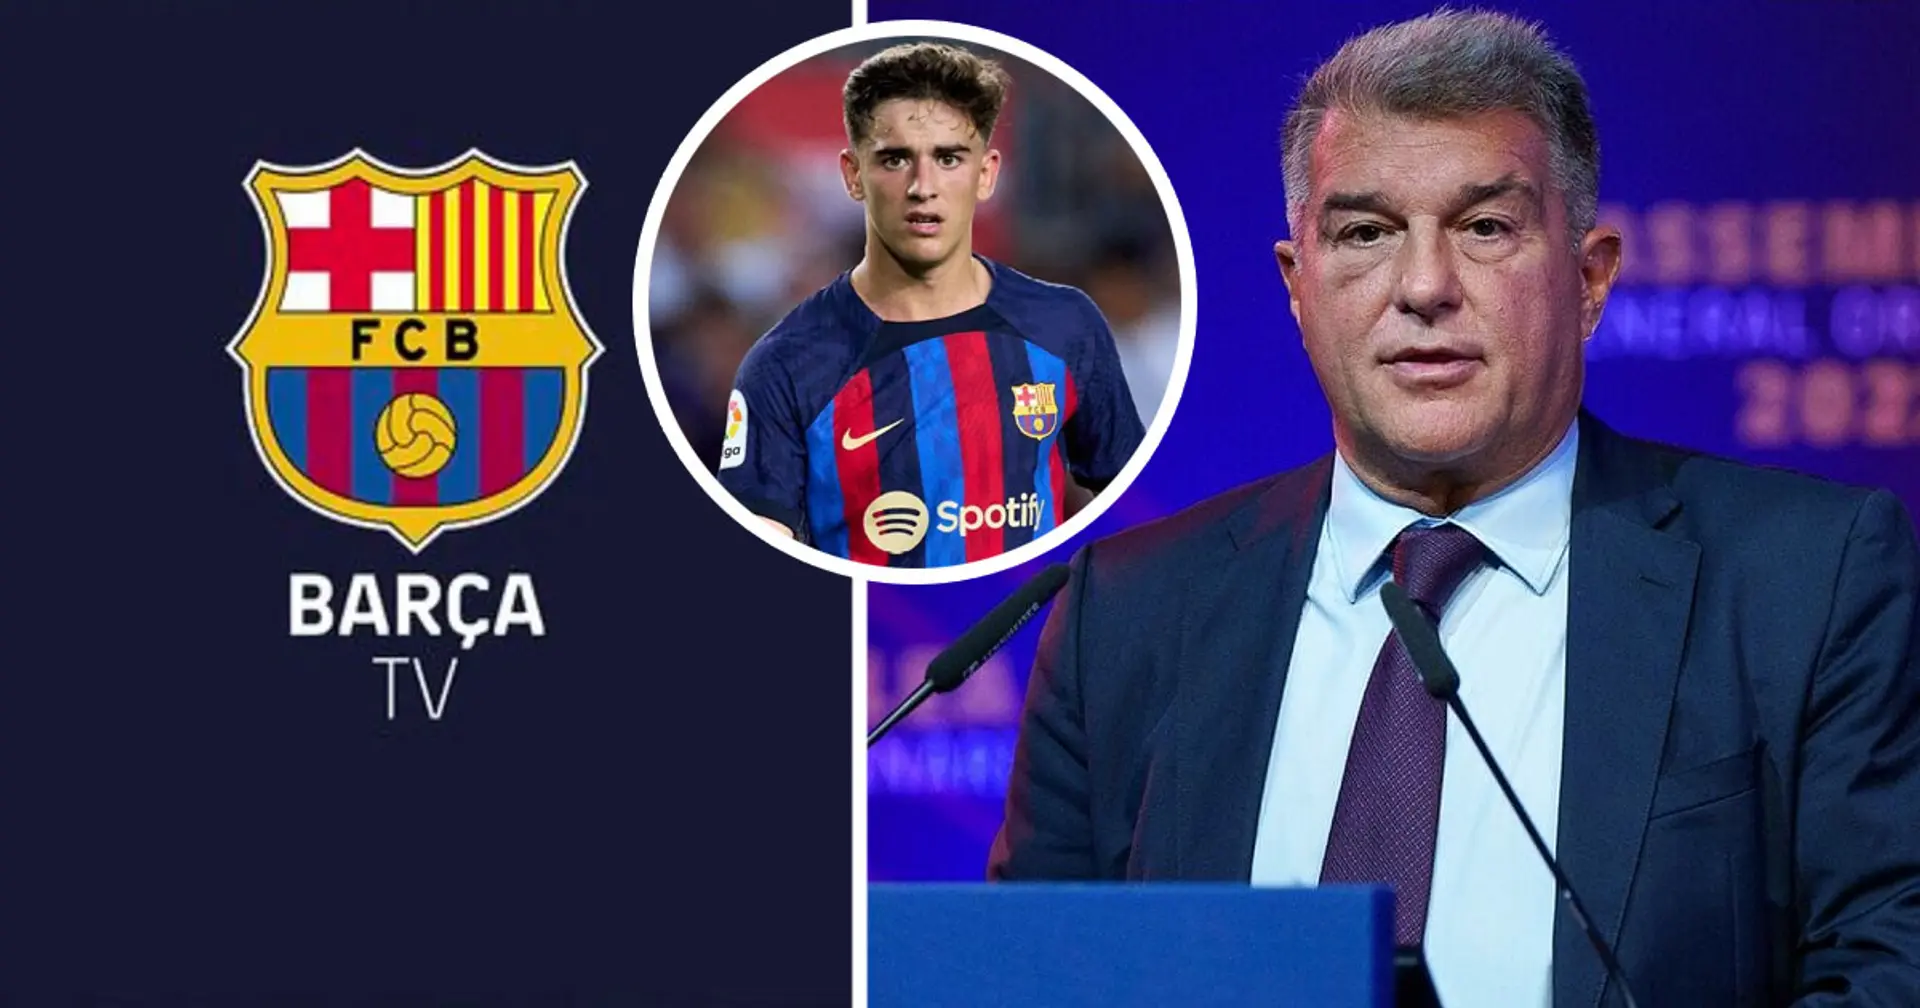 Le club envisagerait de vendre Barca TV pour résoudre des problèmes financiers: explication